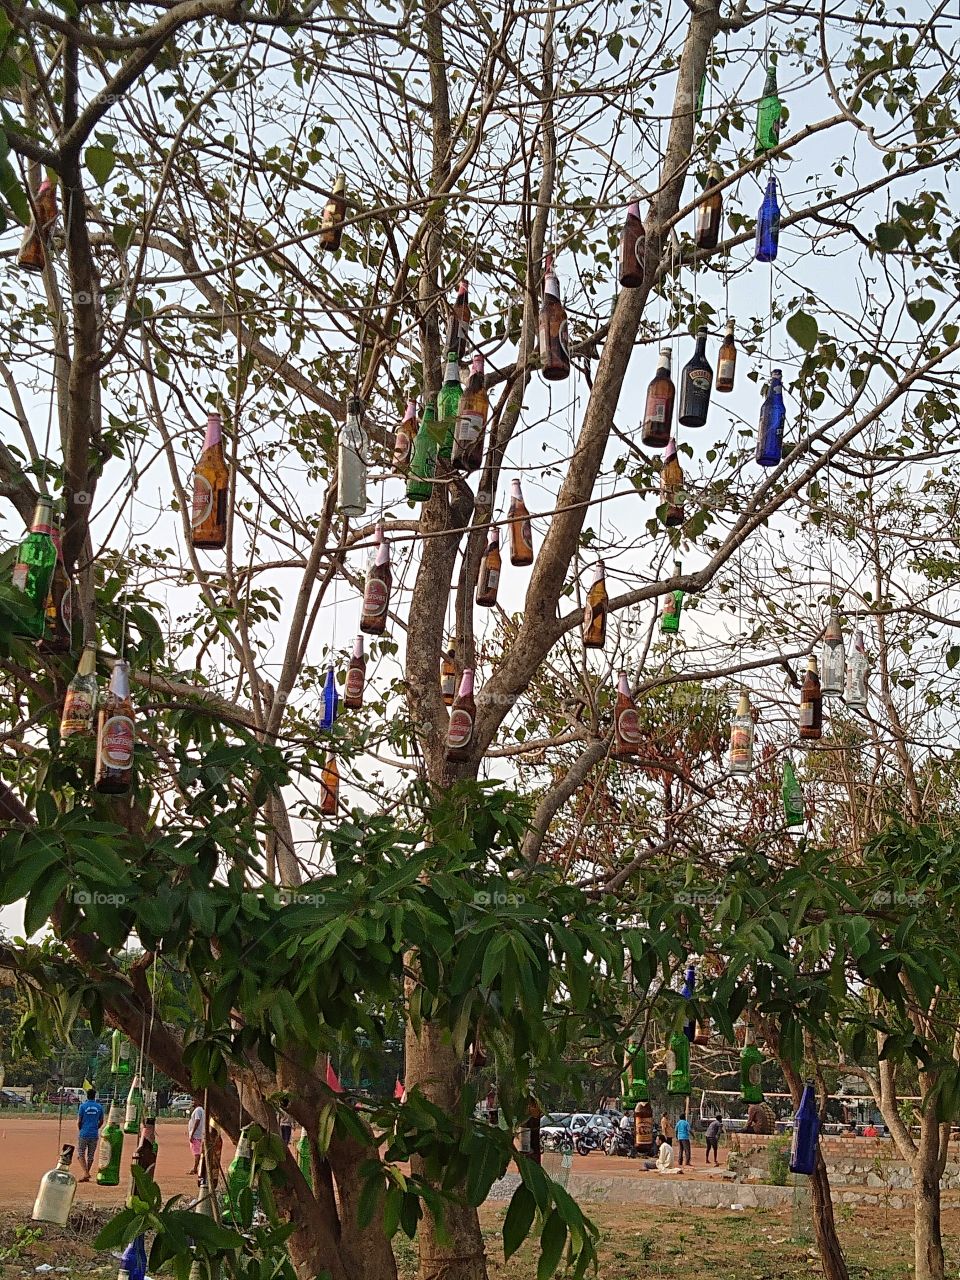 hanging bottles